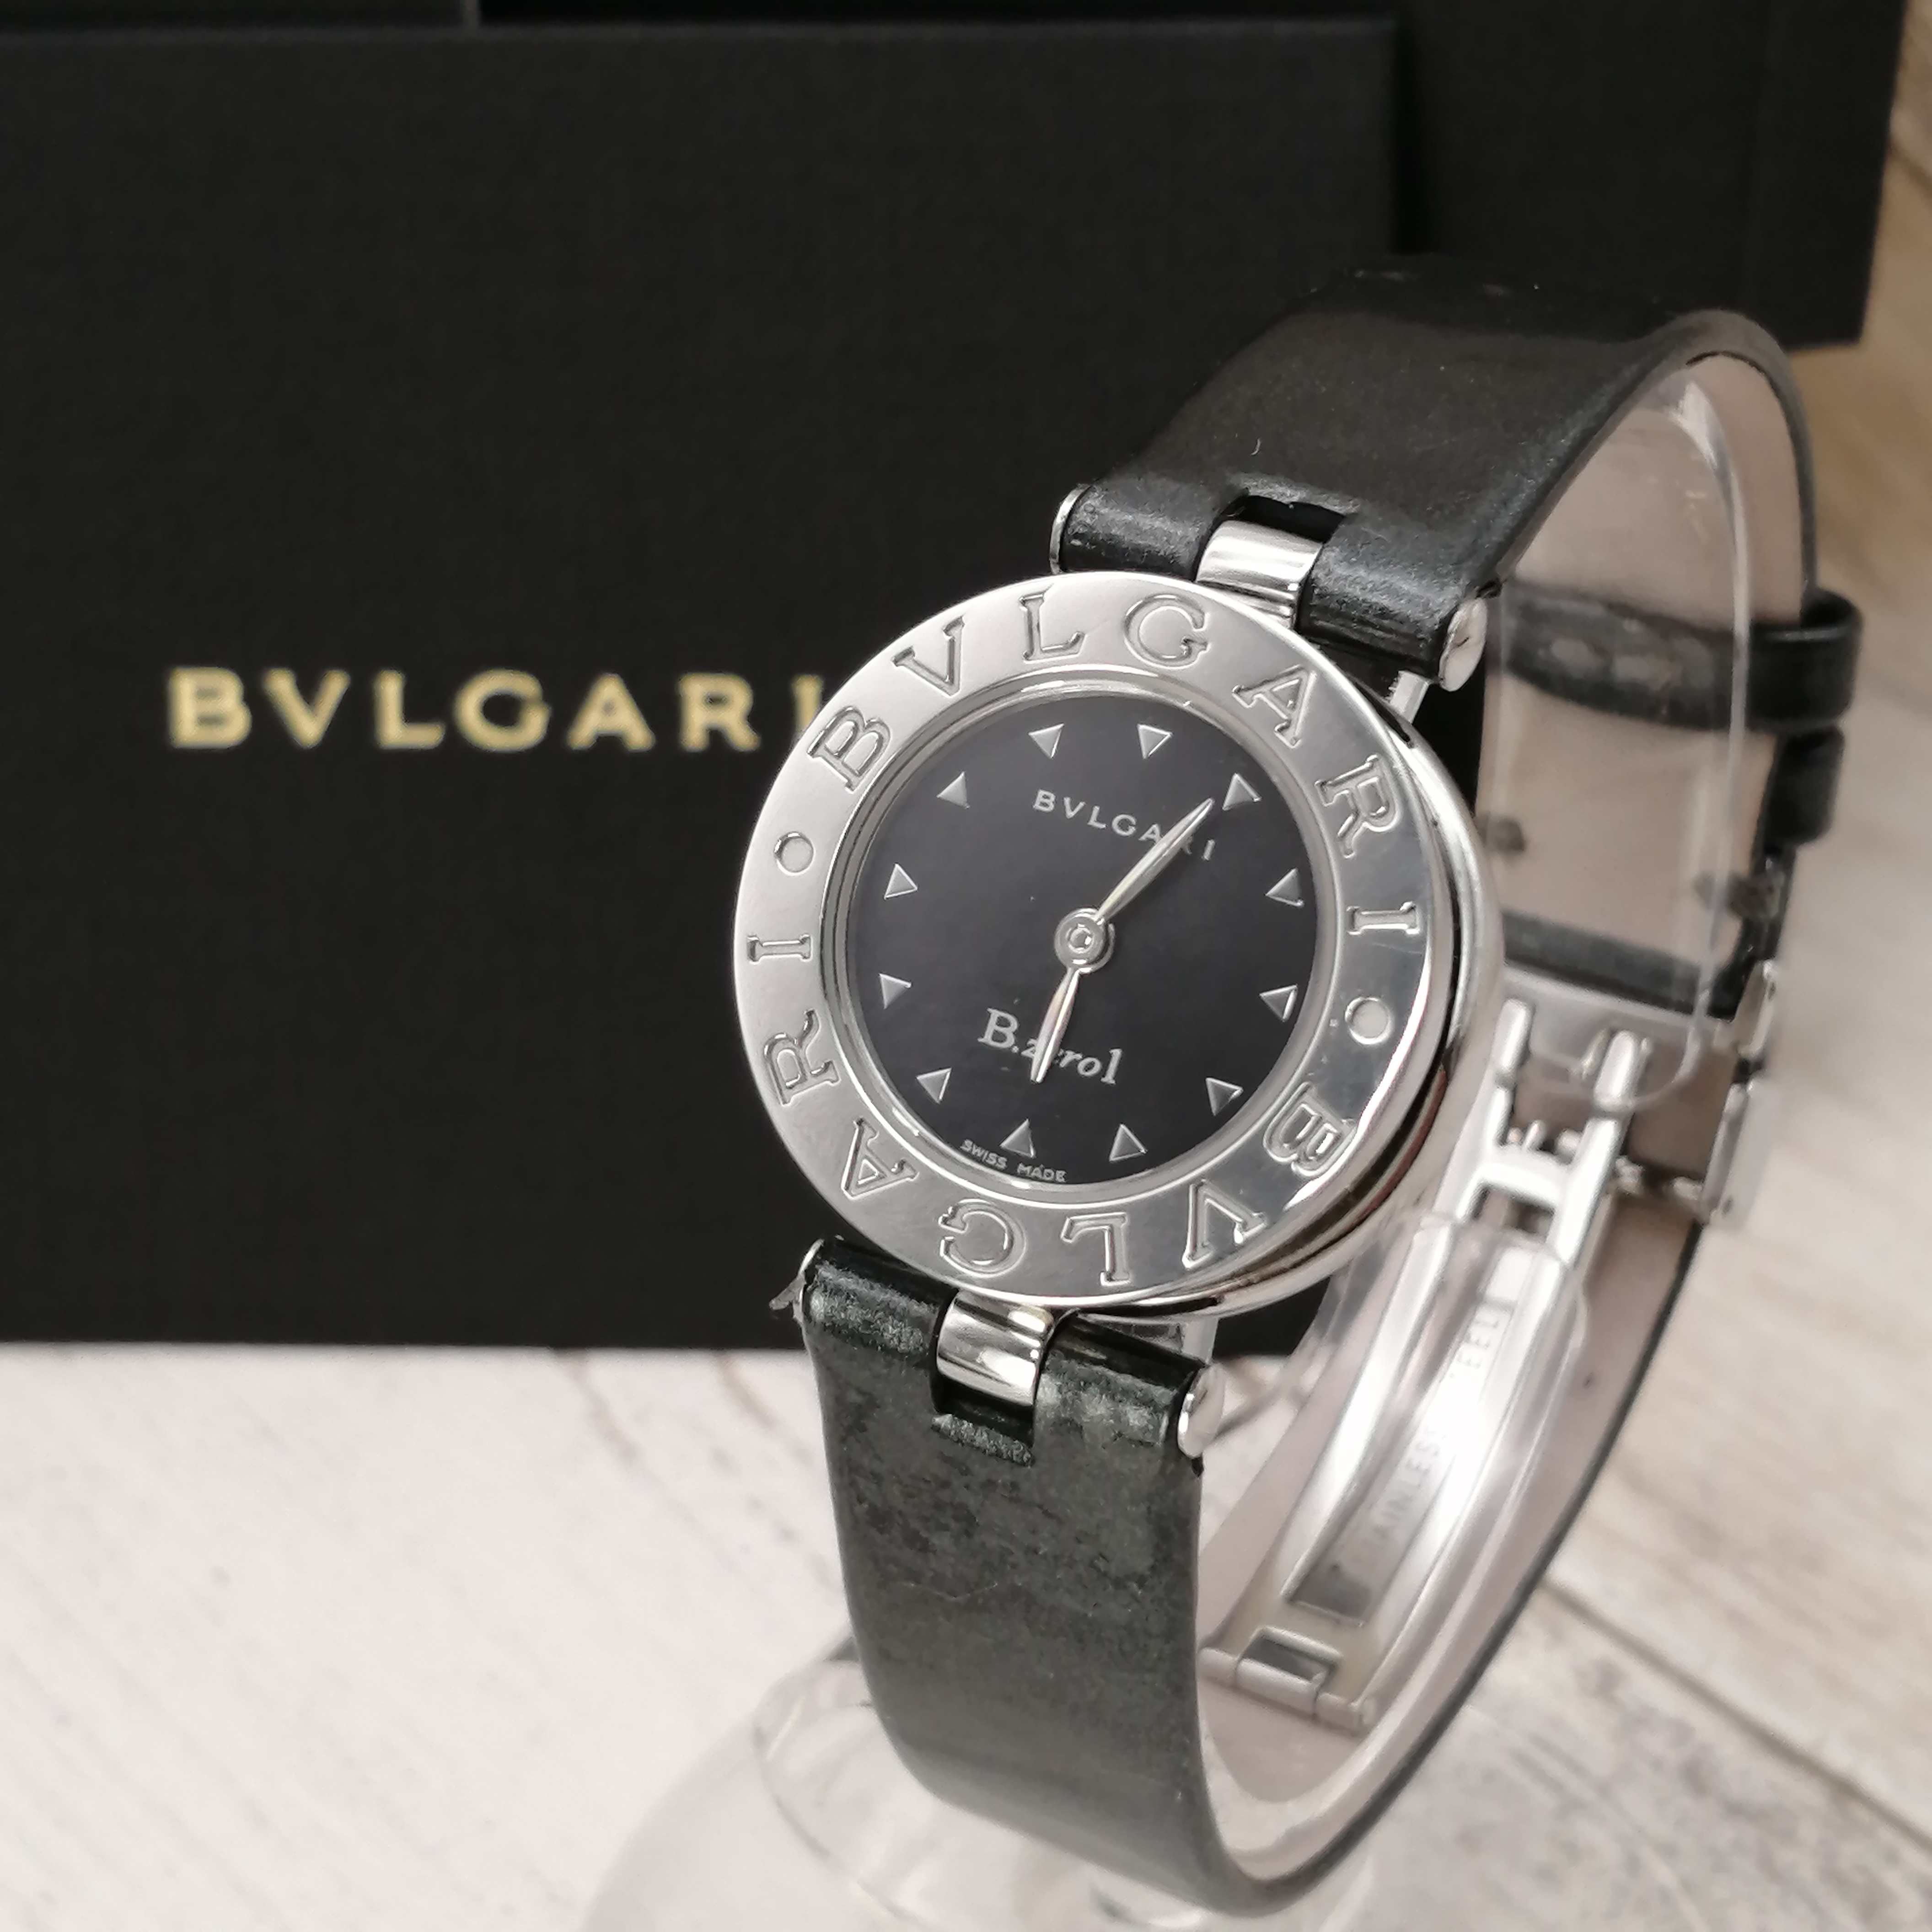 爆売りセール開催中 BVLGARI ビーゼロワン腕時計 レディース ilam.org